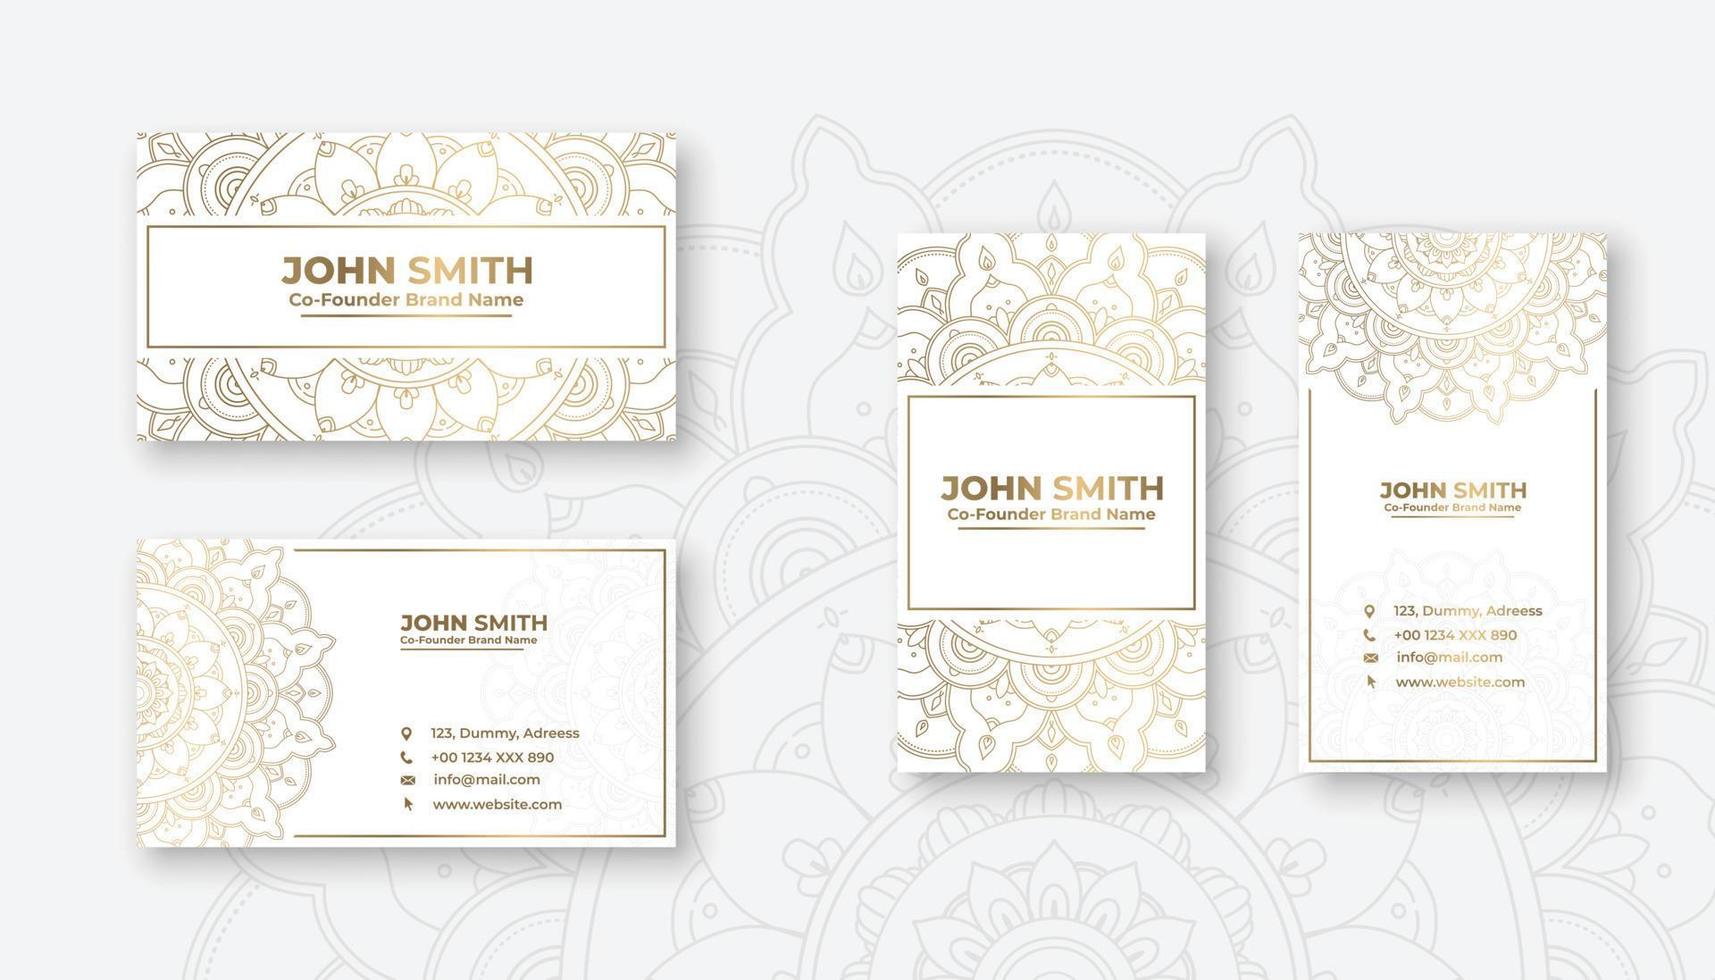 cartão de visita de luxo de cor branca com elementos ornamentais de mandala floral dourado vetor